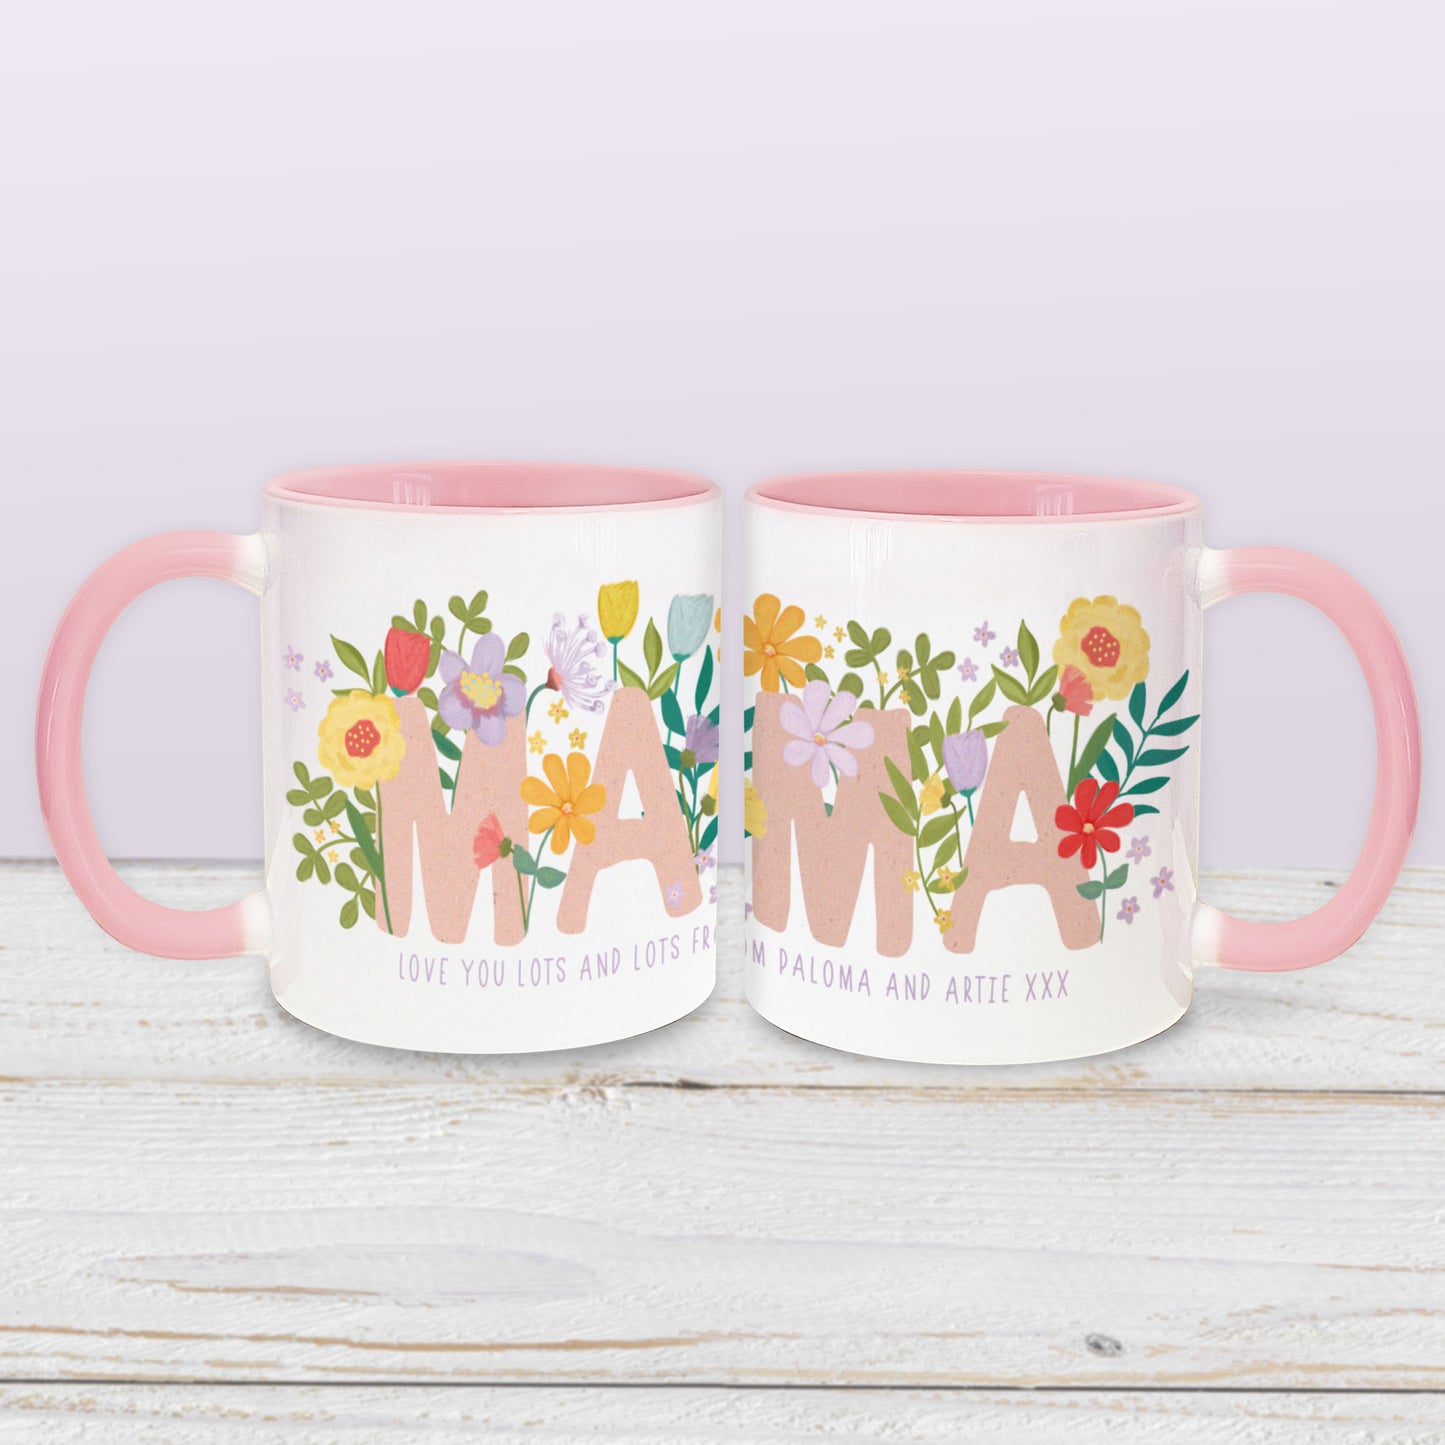 Mama Pink Handled Ceramic Mug. Halloween mug. Cute pink handle mug. Personalised ceramic mug. Mother's Day Mug.